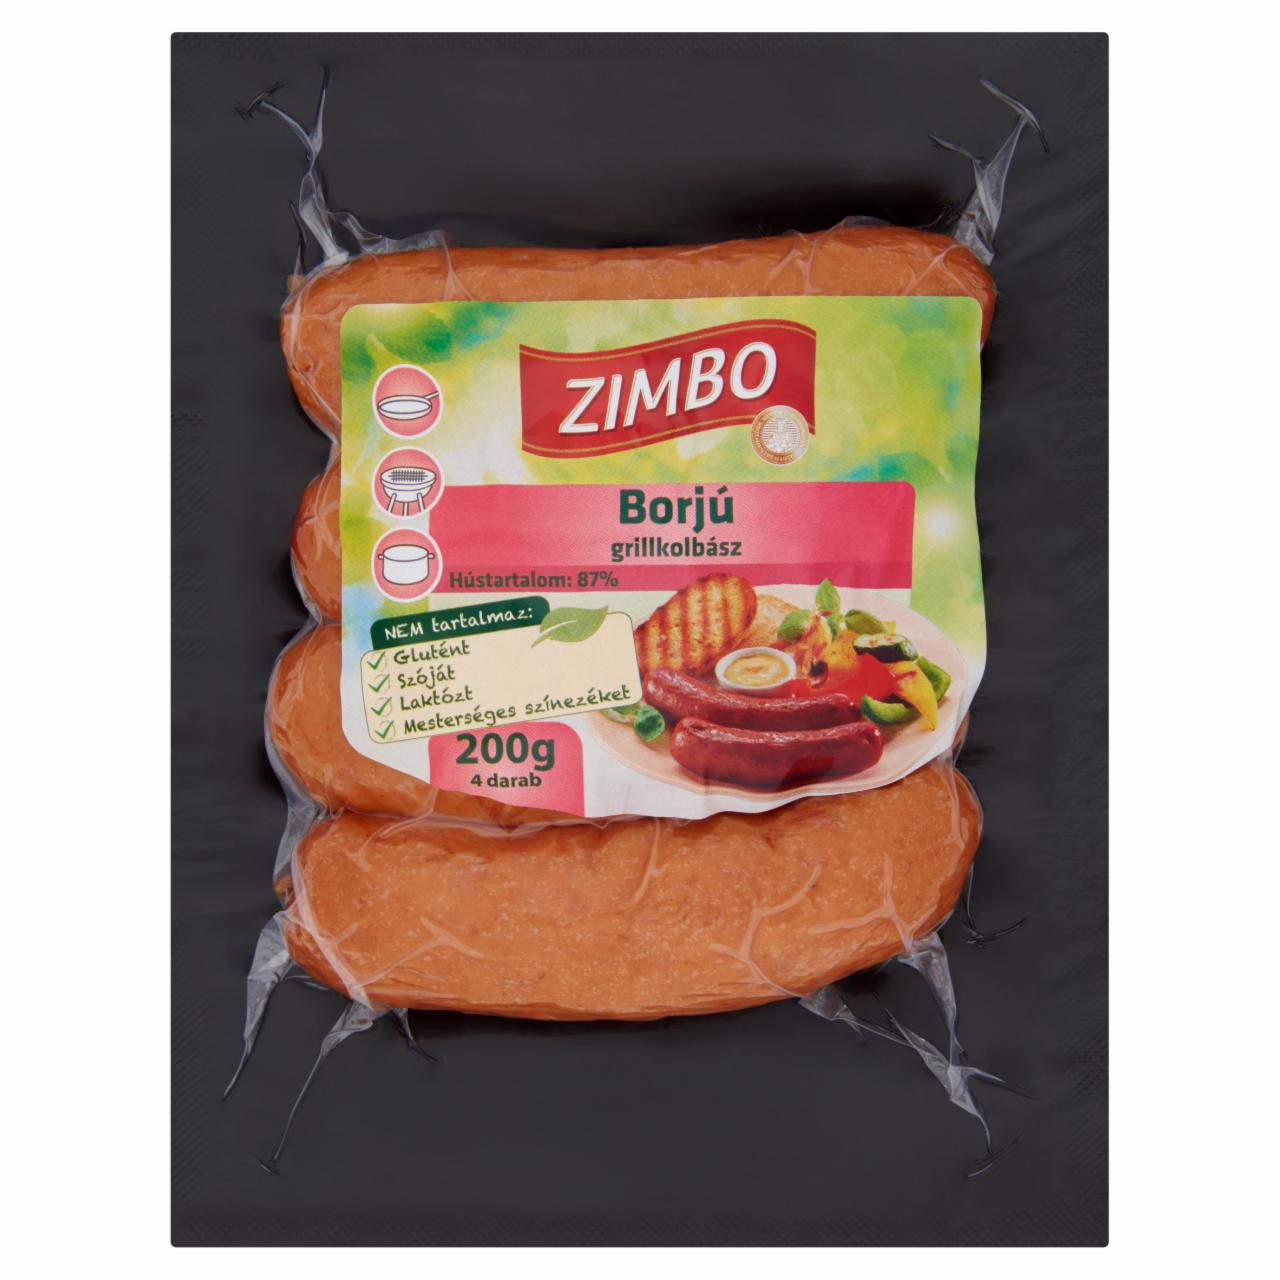 Képek - Zimbo borjú grillkolbász 4 db 200 g